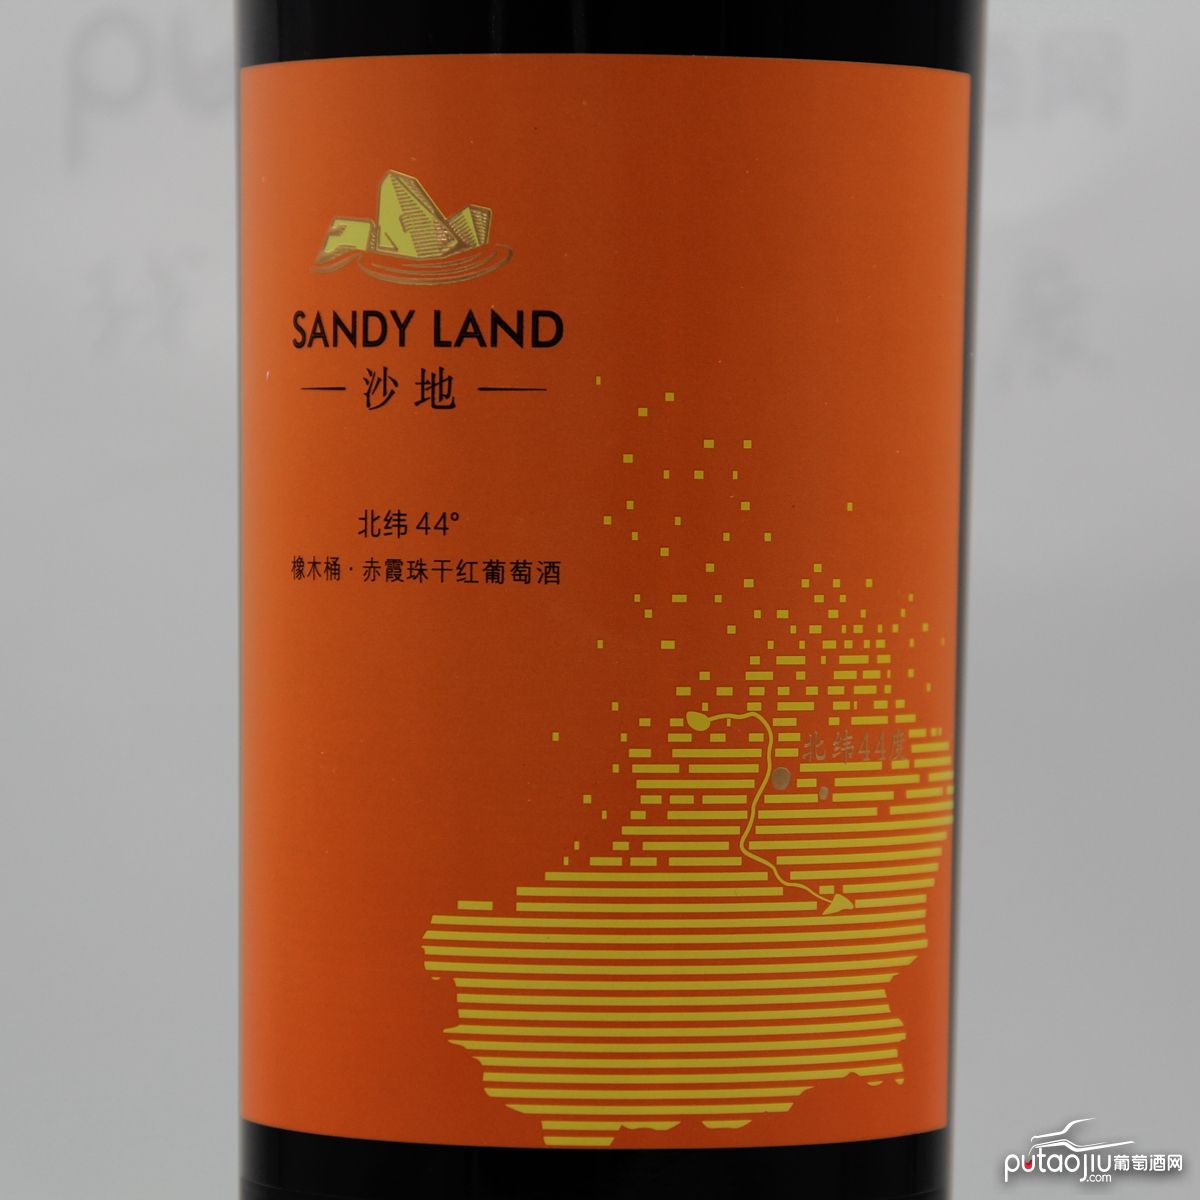 中国新疆产区沙地酒庄 赤霞珠北纬44°橡木桶干红葡萄酒